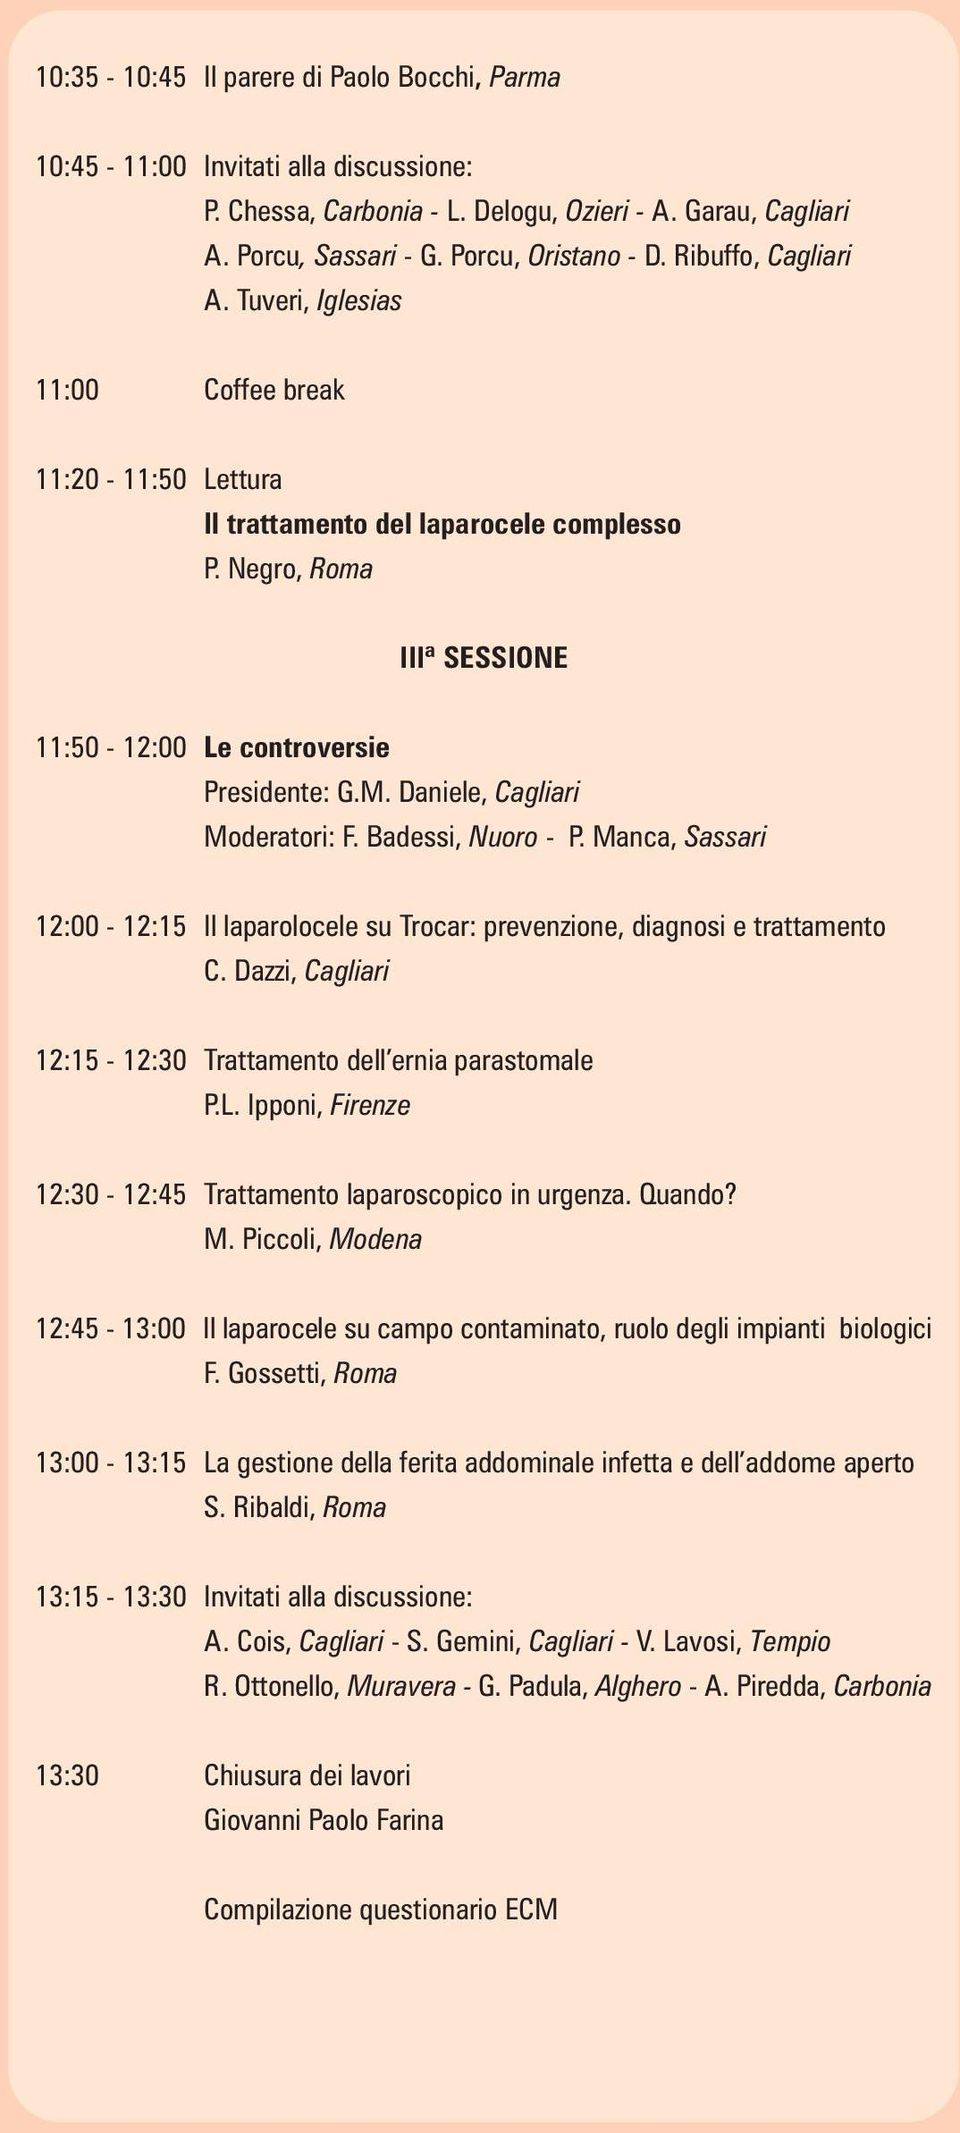 Daniele, Cagliari Moderatori: F. Badessi, Nuoro - P. Manca, Sassari 12:00-12:15 Il laparolocele su Trocar: prevenzione, diagnosi e trattamento C.